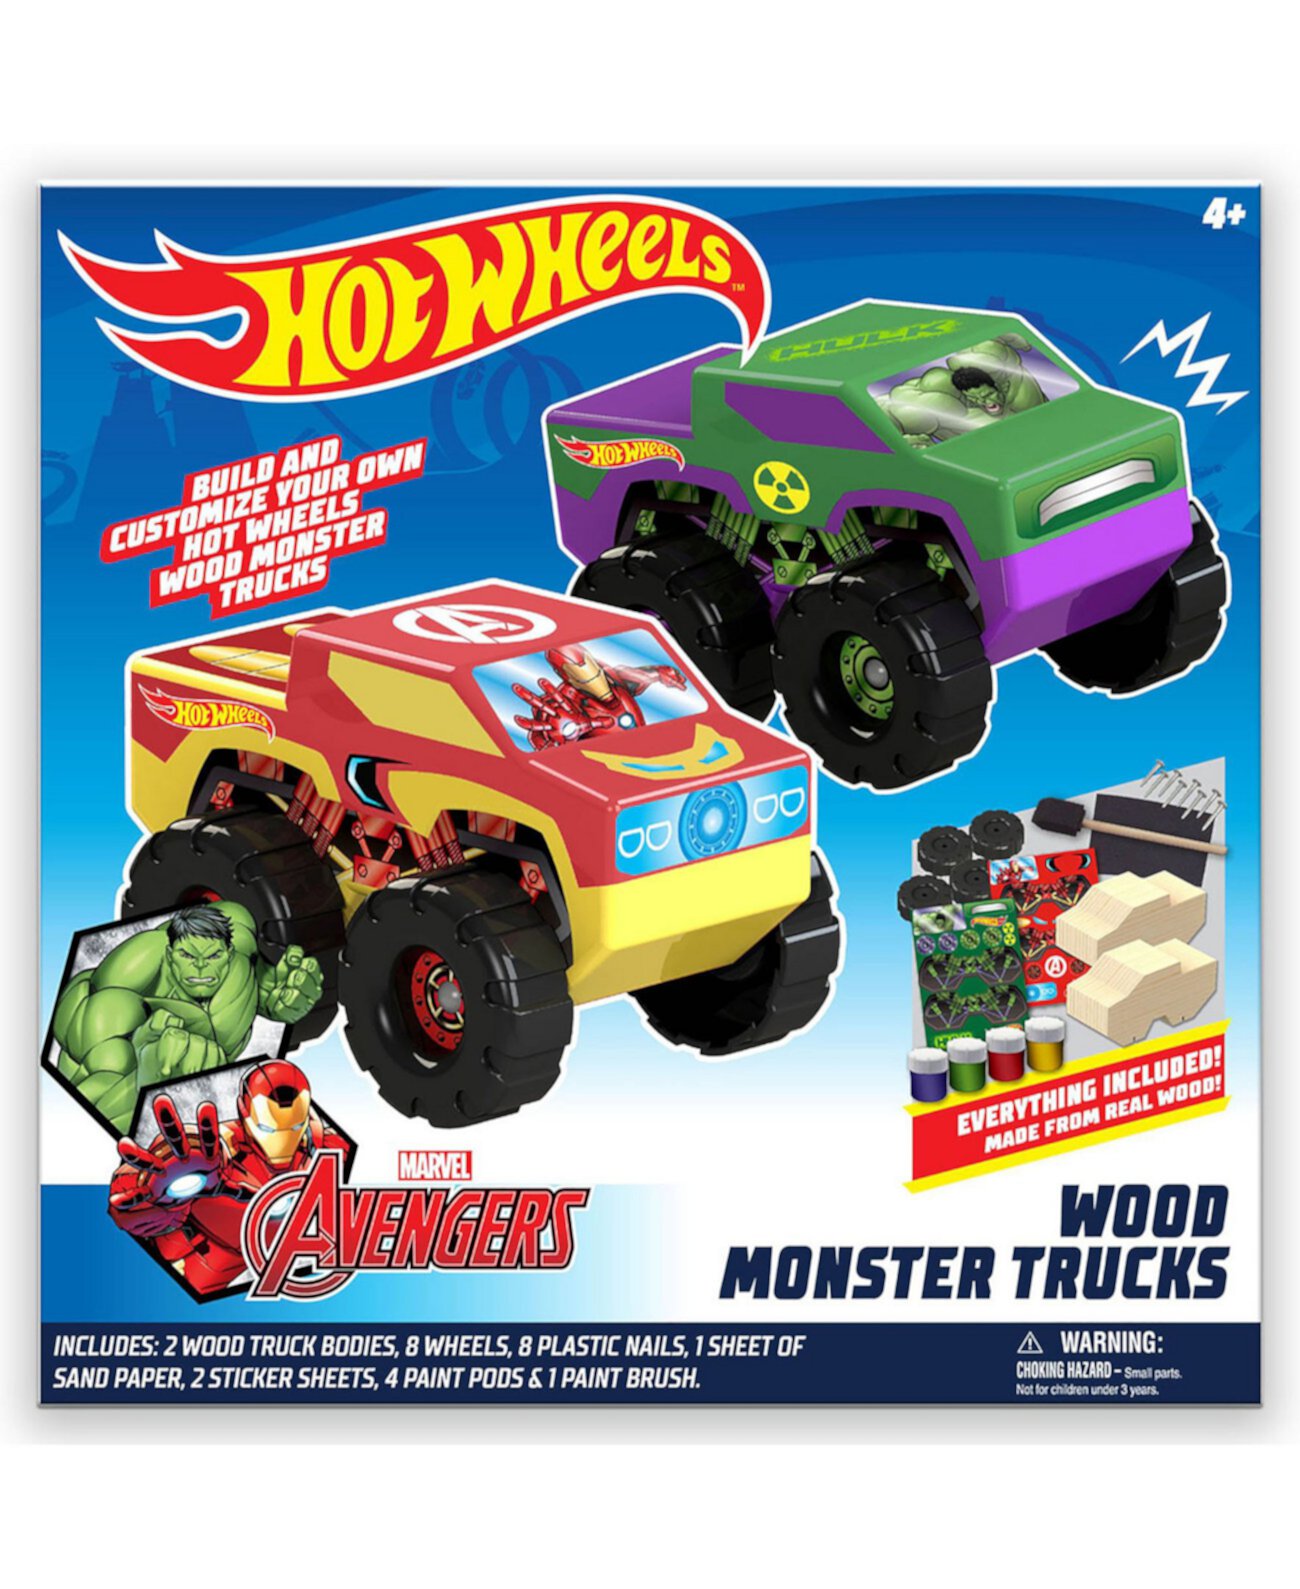 Игрушечные деревянные грузовики-монстры своими руками - 2 шт. (Marvel Avengers Hulk и Ironman) Hot Wheels